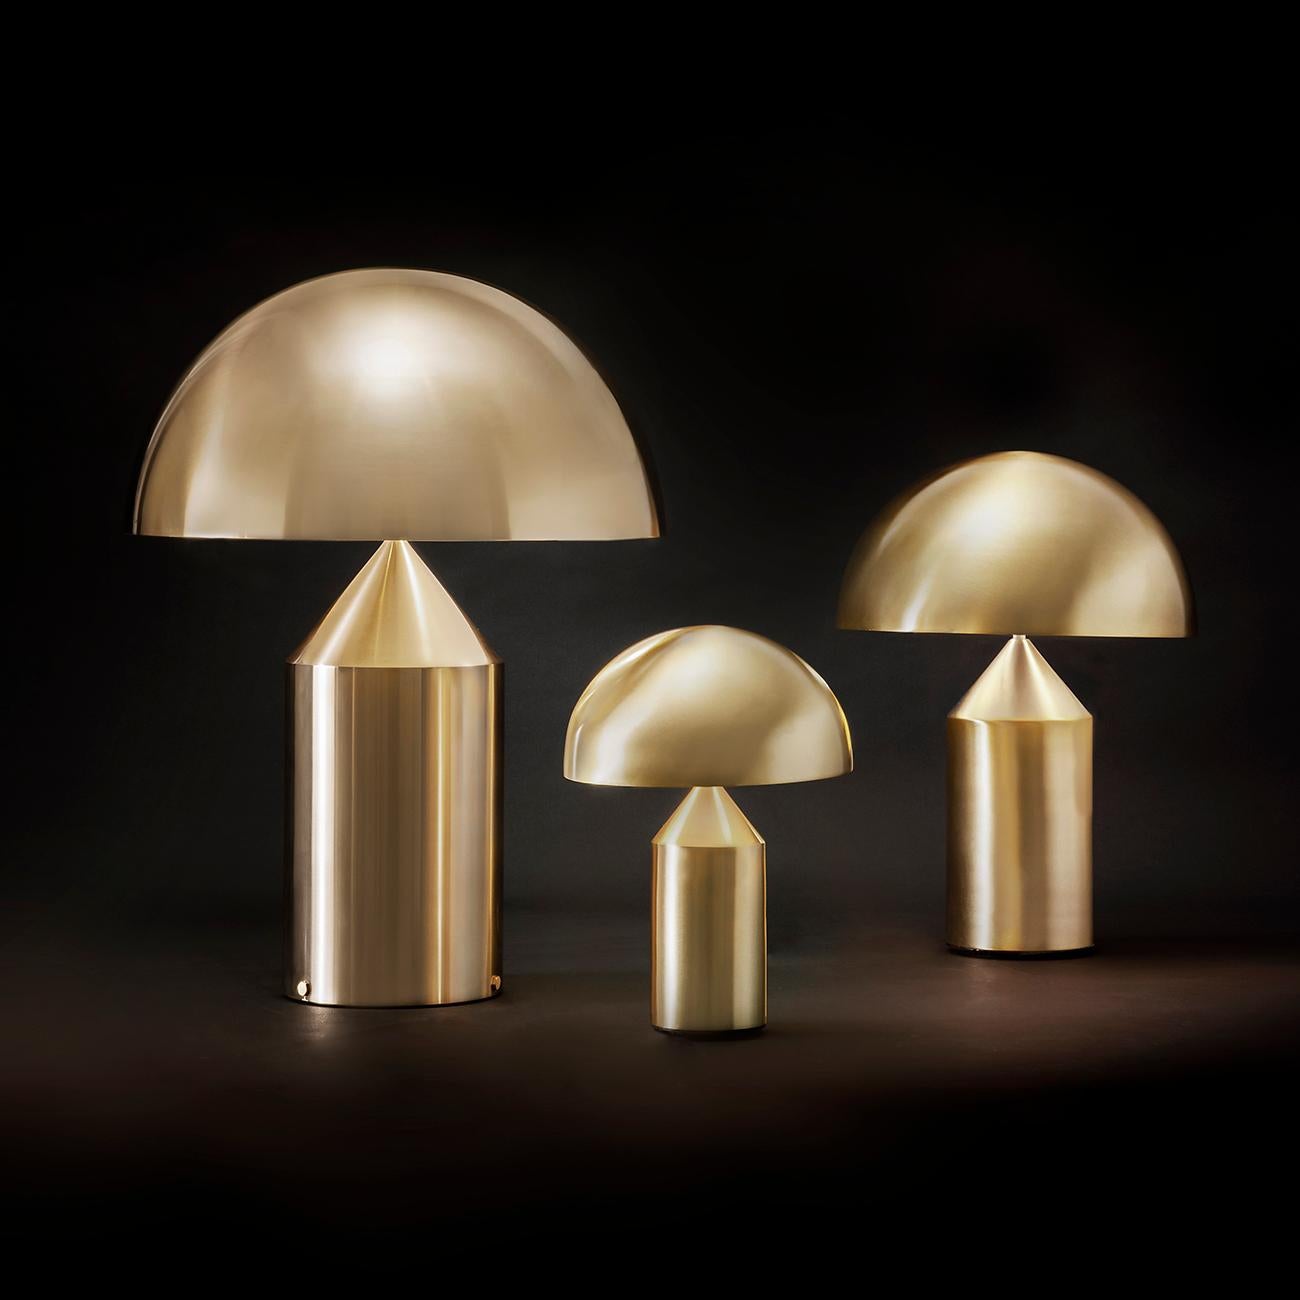 Lampe de table conçue par Vico Magistretti en 1977
Fabriqué par Oluce, Italie.

Conçue en 1977 par Vico Magistretti, Atollo est devenue au fil des ans l'archétype de la lampe de table, remportant le Compasso d'Oro en 1979 et révolutionnant